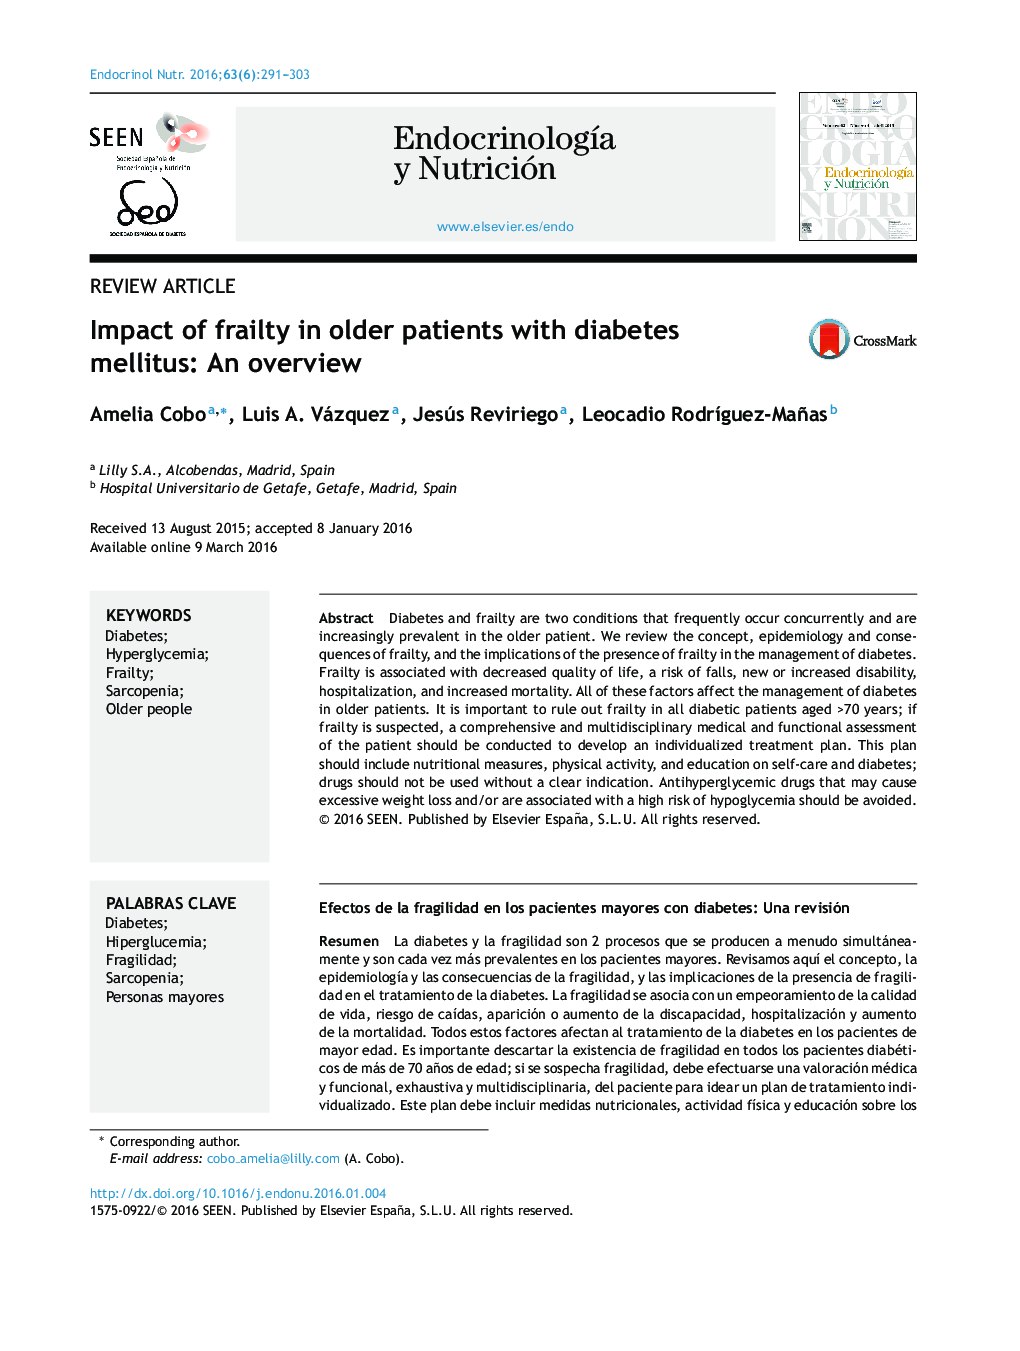 تأثیر ضعف در بیماران مسن تر دیابتی قندی: یک مرور کلی